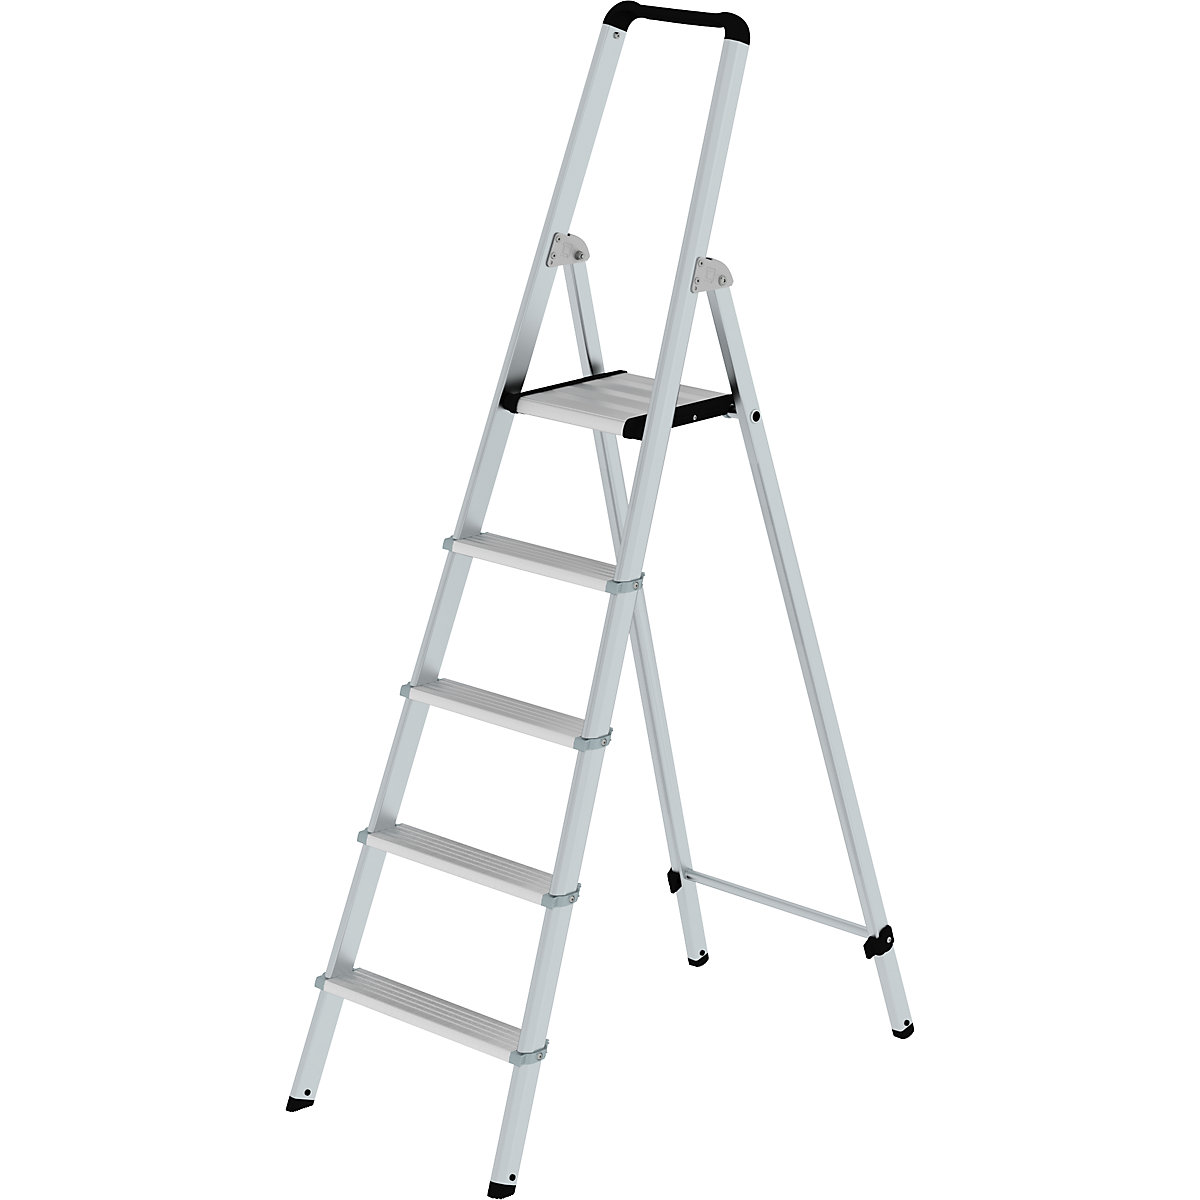 Hliníkový stojaci rebrík so stupňami, pochôdzny z jednej strany – MUNK, eloxované, s ergonomicky tvarovanou stojinou a odkladacou miskou, 5 stupňov